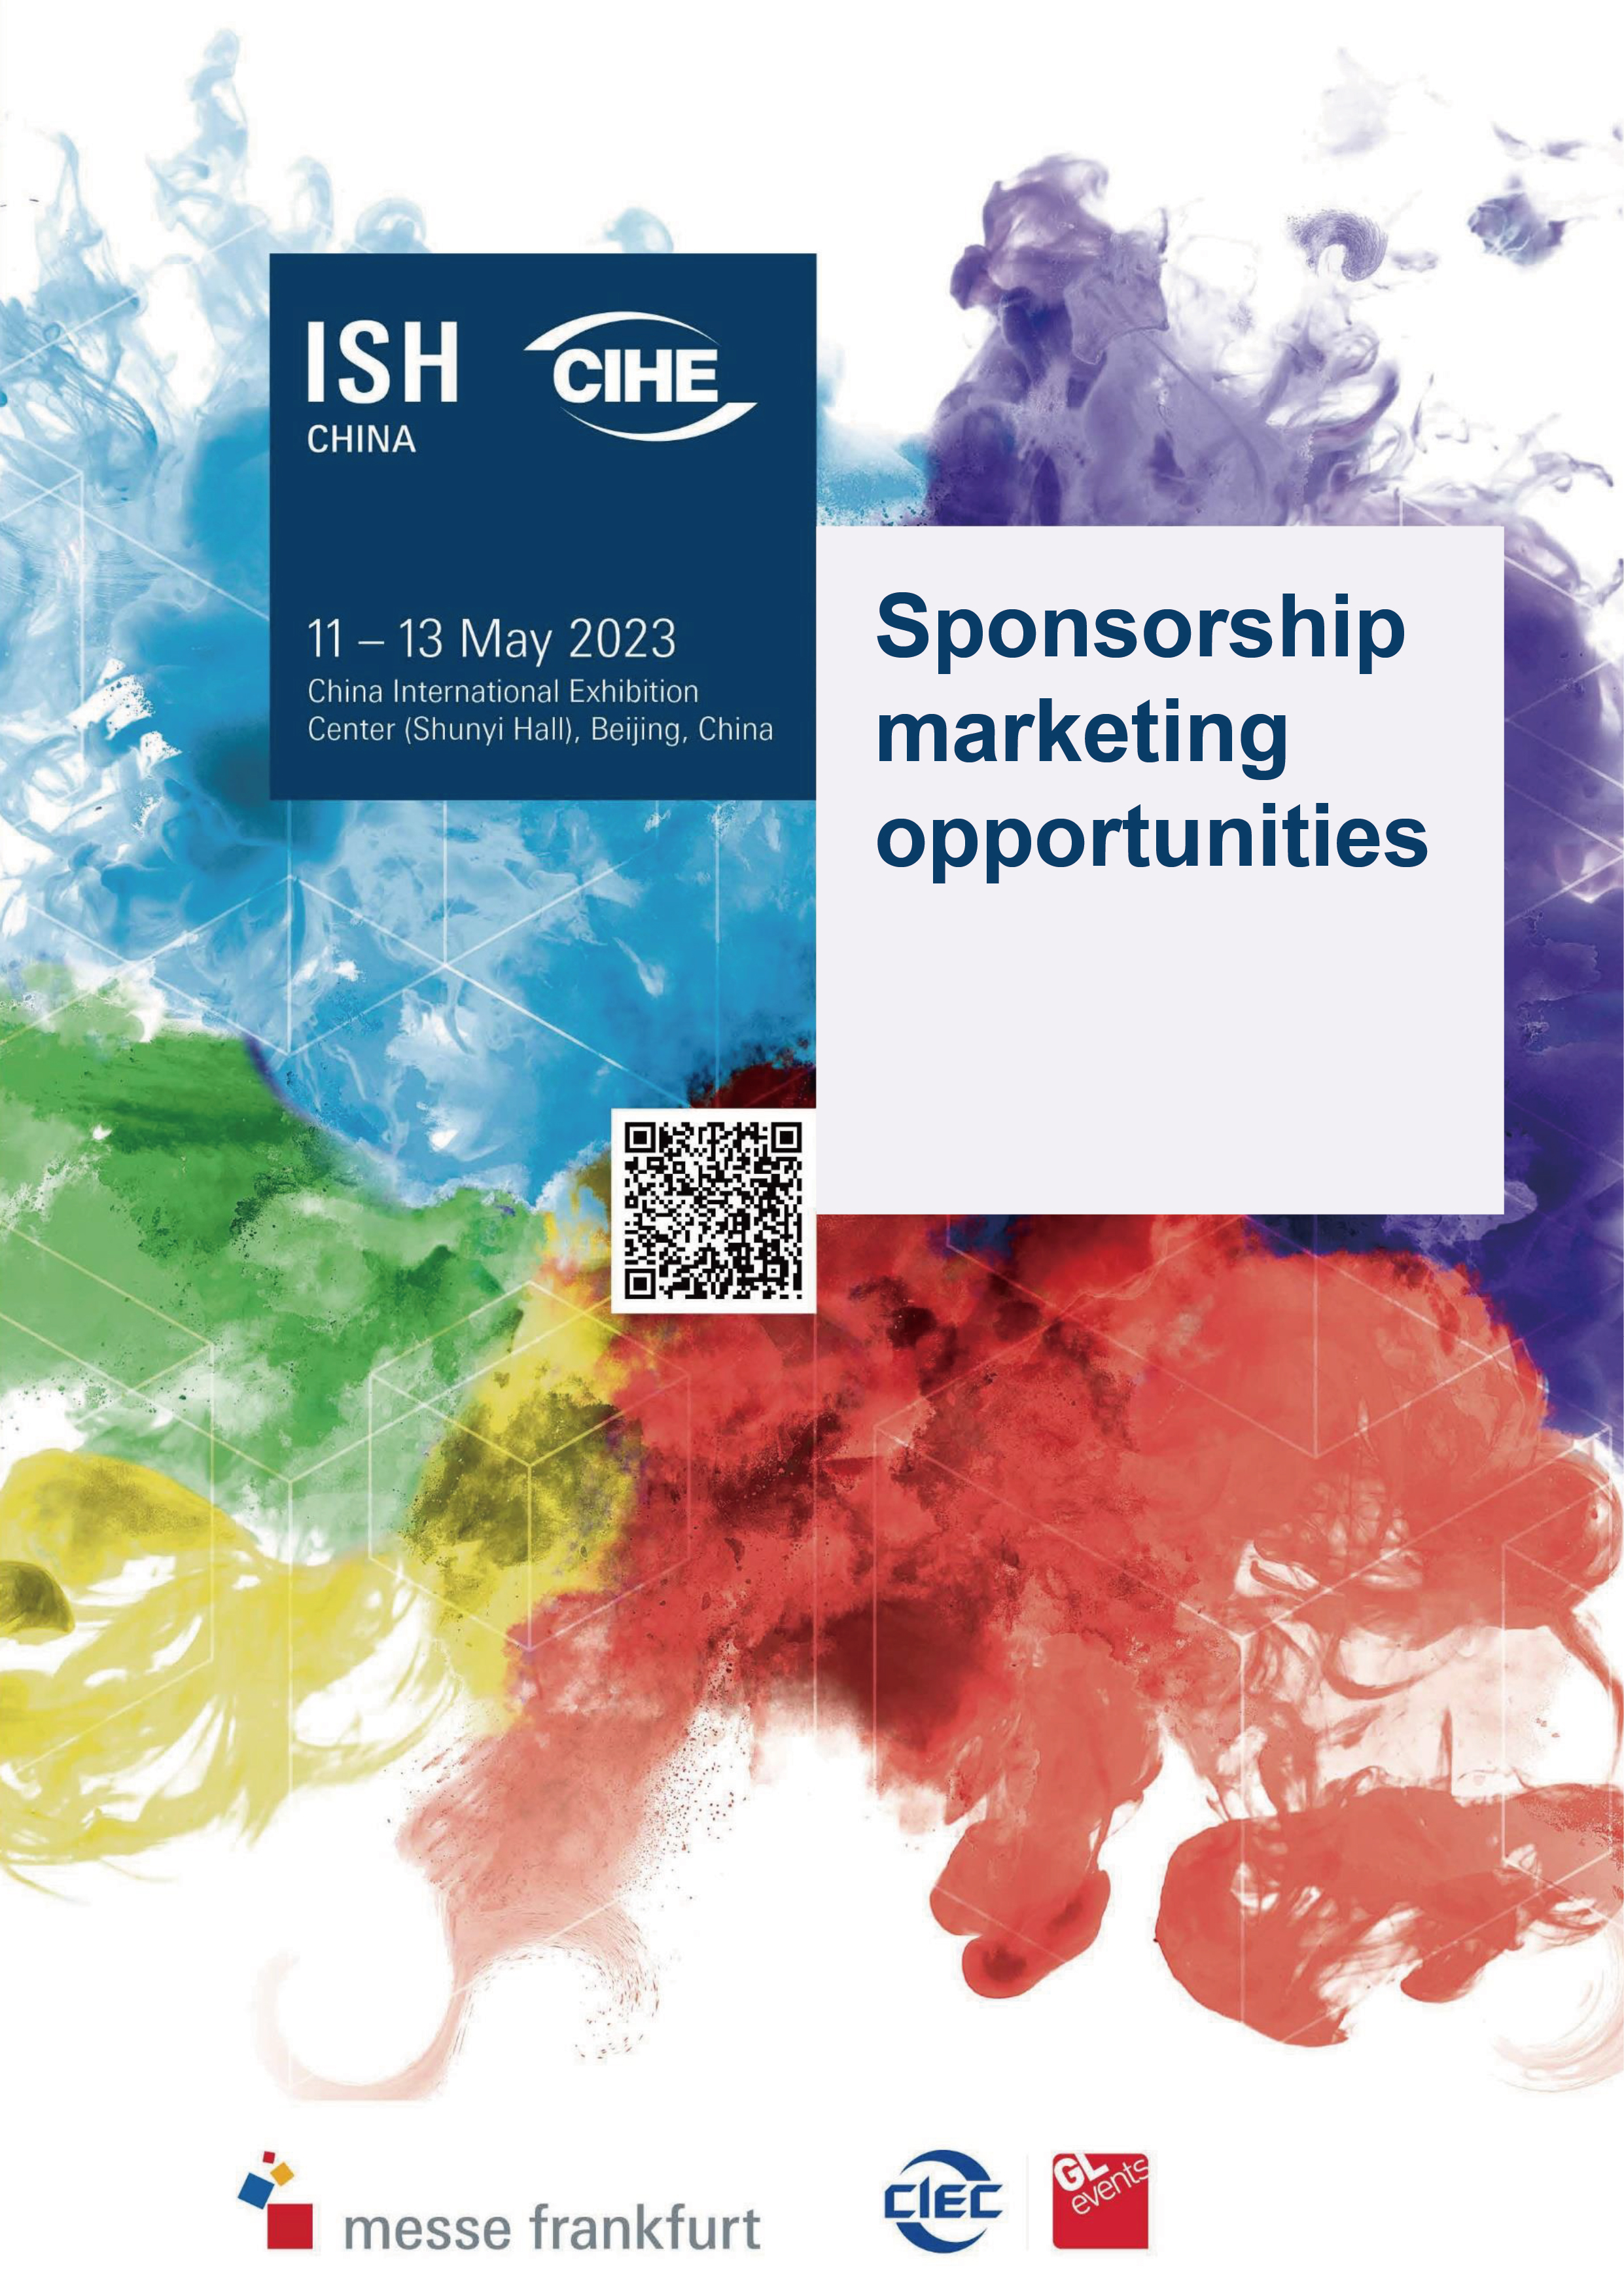 ISHC (Sponsorship)